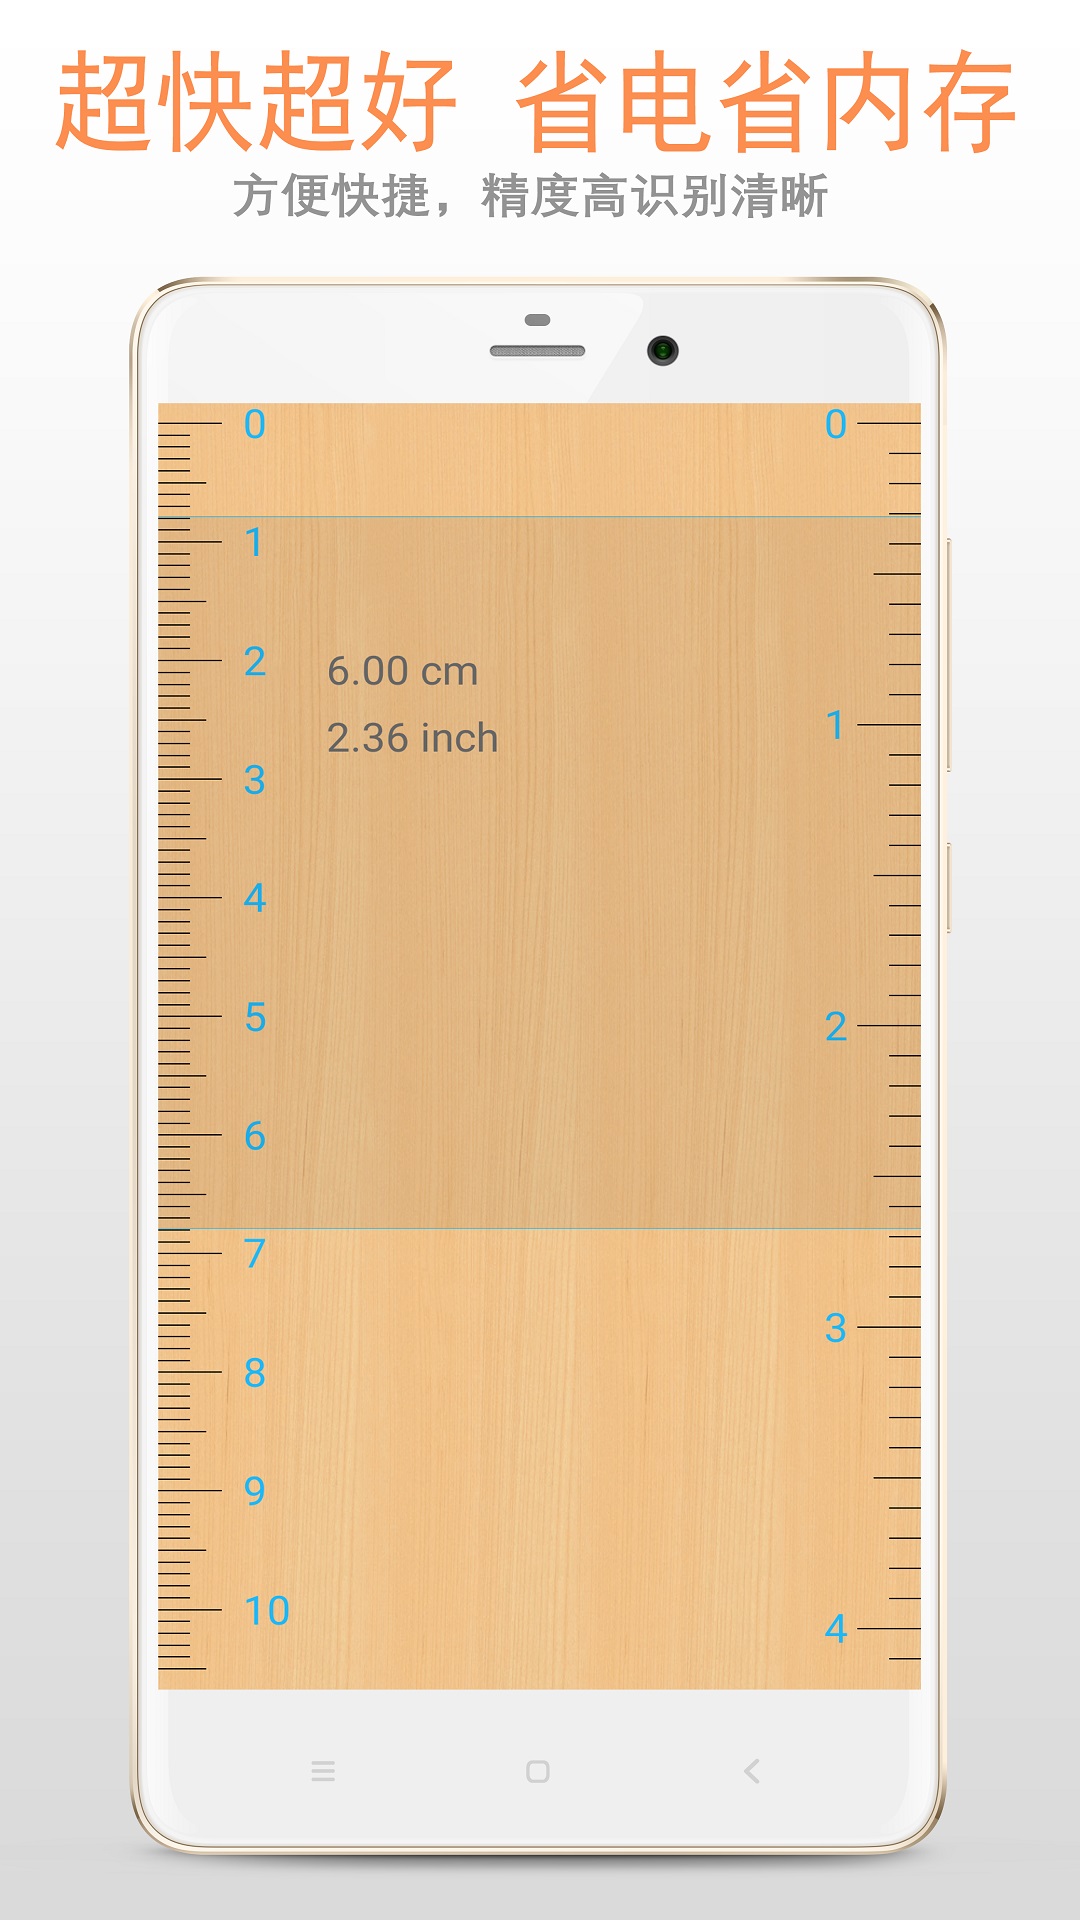 尺子在线测量11手机超级尺子在线测量官方版v332302